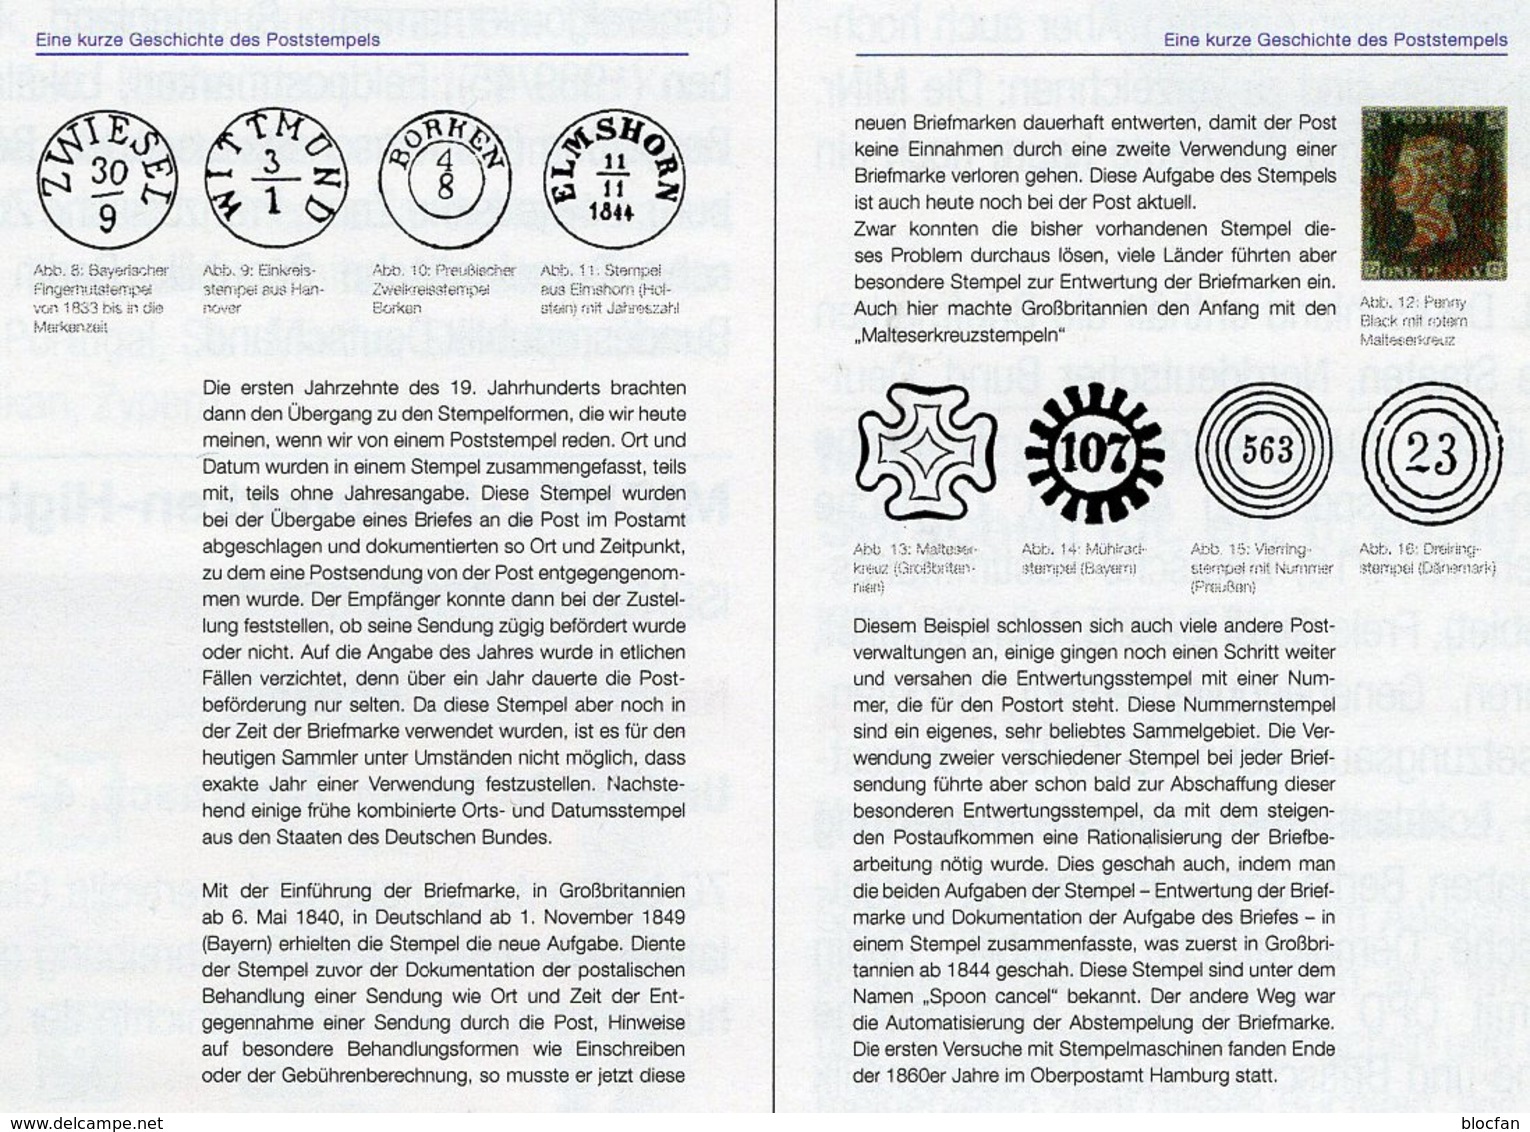 Stempel Verstehen Ratgeber 2020 New 50€ MICHEL Briefmarken Stempelarten Wert Bestimmen Stamps ISBN978 3 95402 252 6 - Filatelie